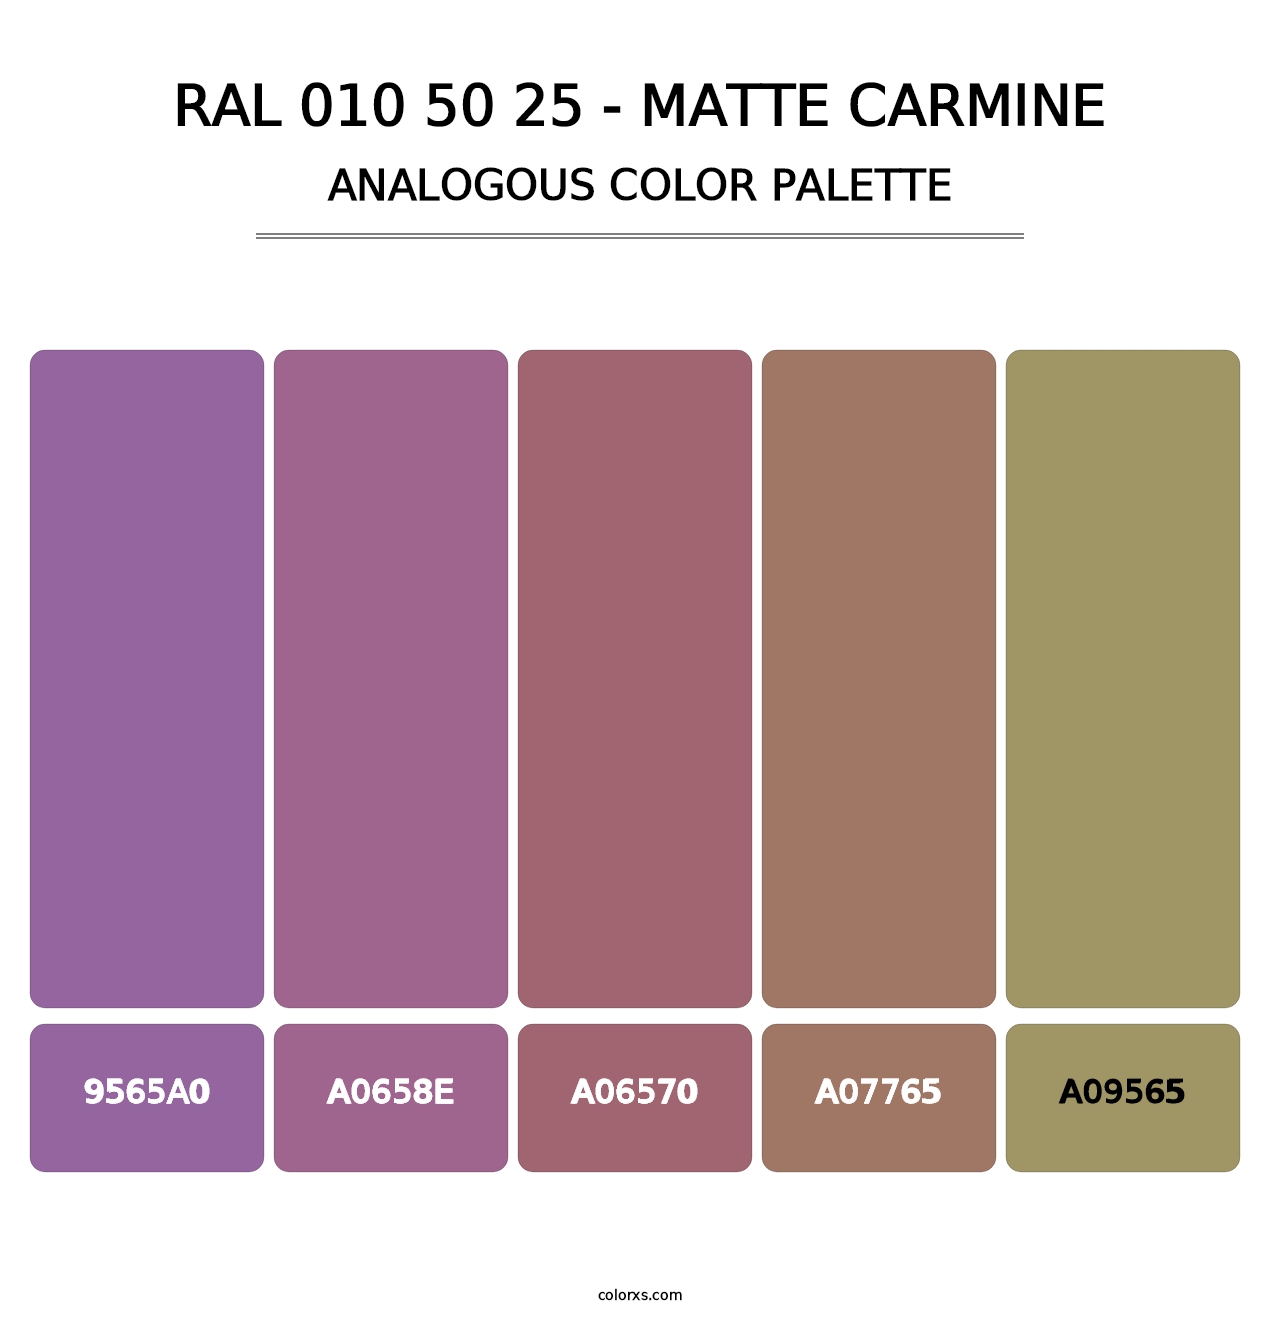 RAL 010 50 25 - Matte Carmine - Analogous Color Palette